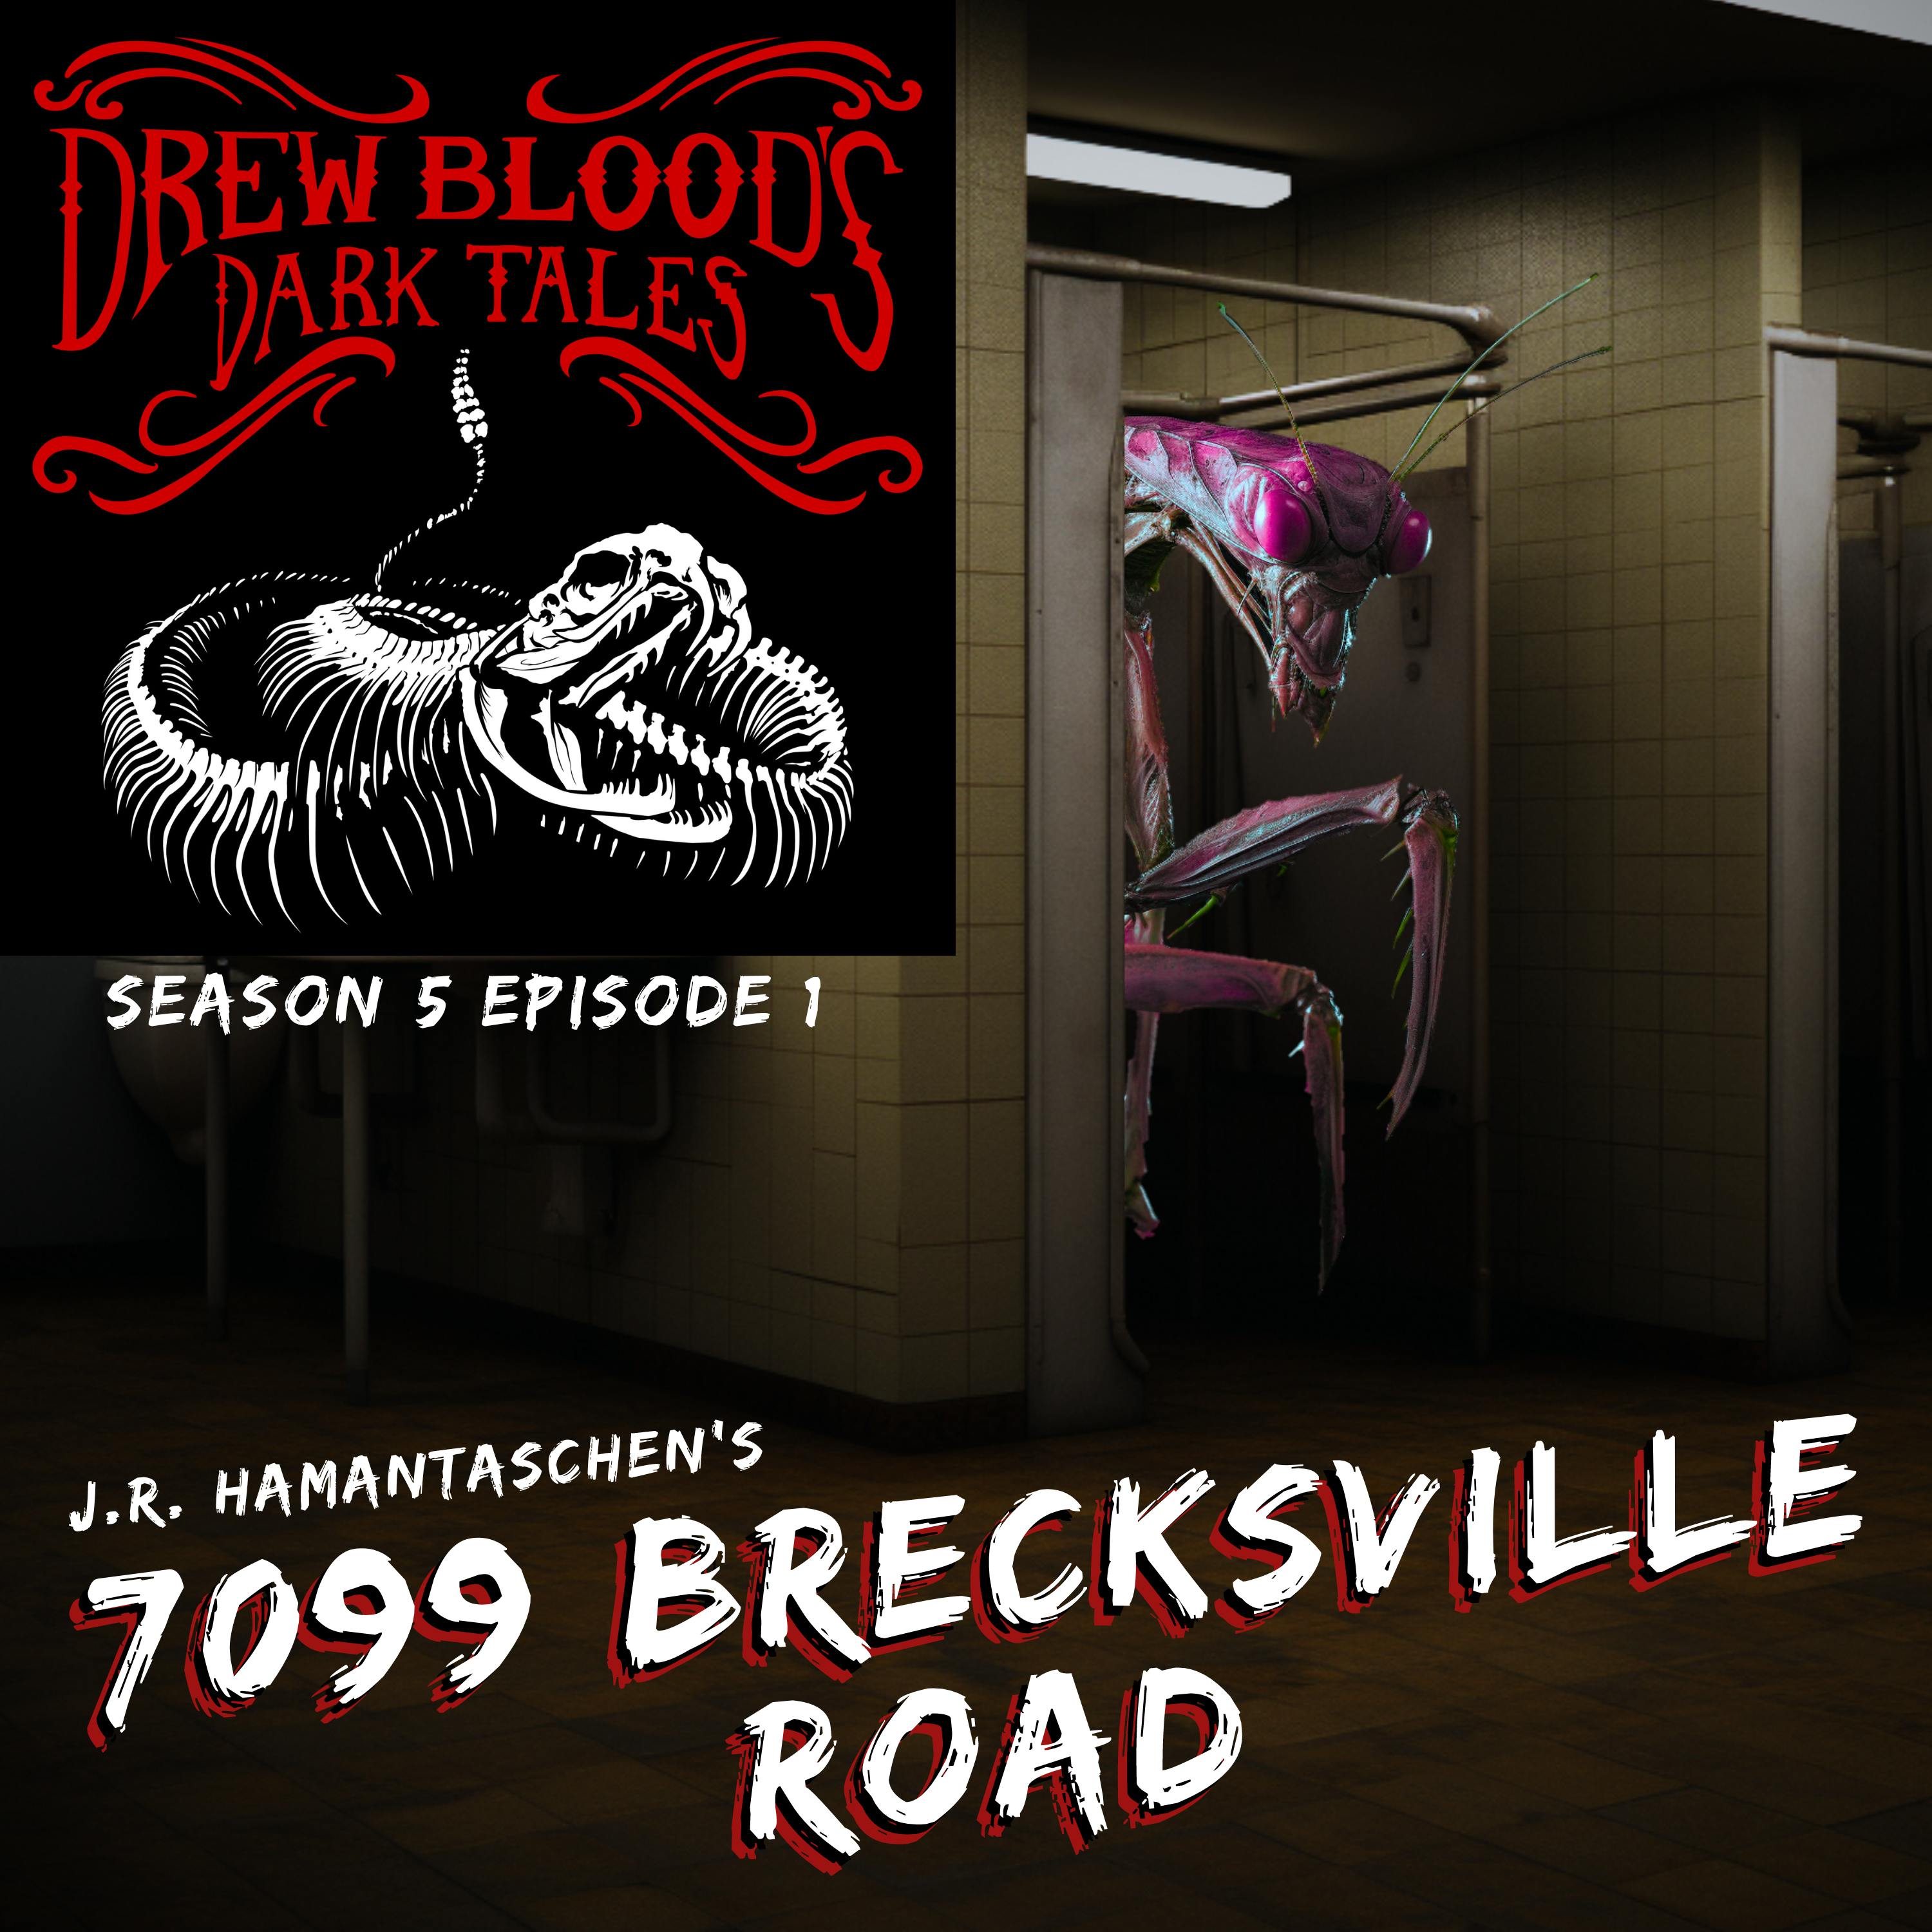 S5E01 - "7099 Brecksville Road" - Drew Blood